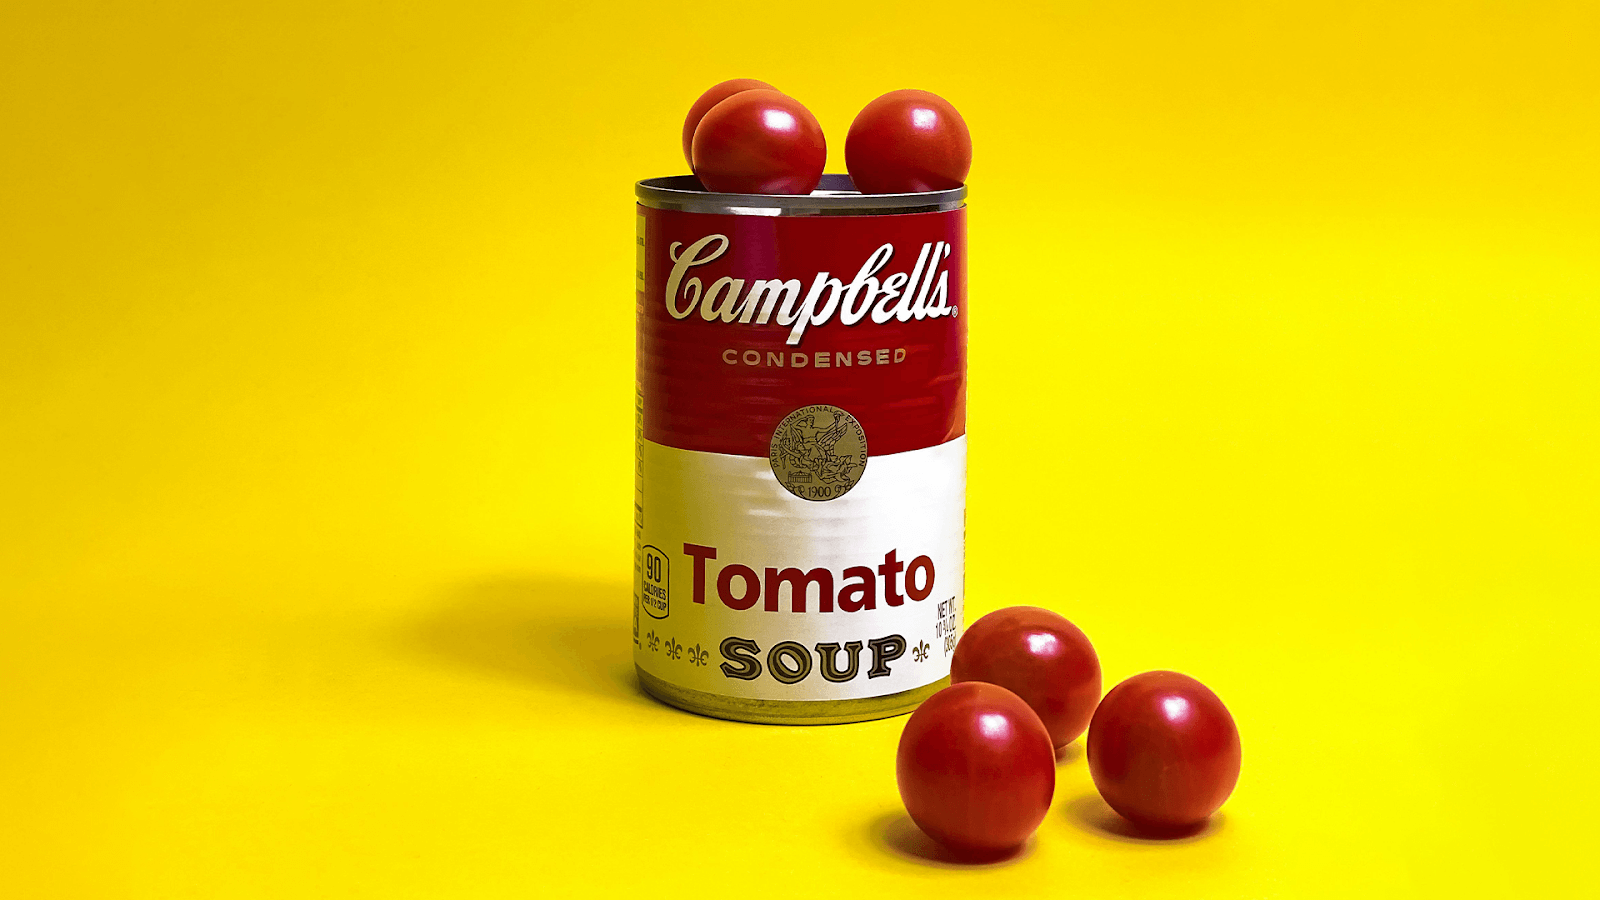 Campbell's tomato soup on a yellow background - Anastasiya Badun